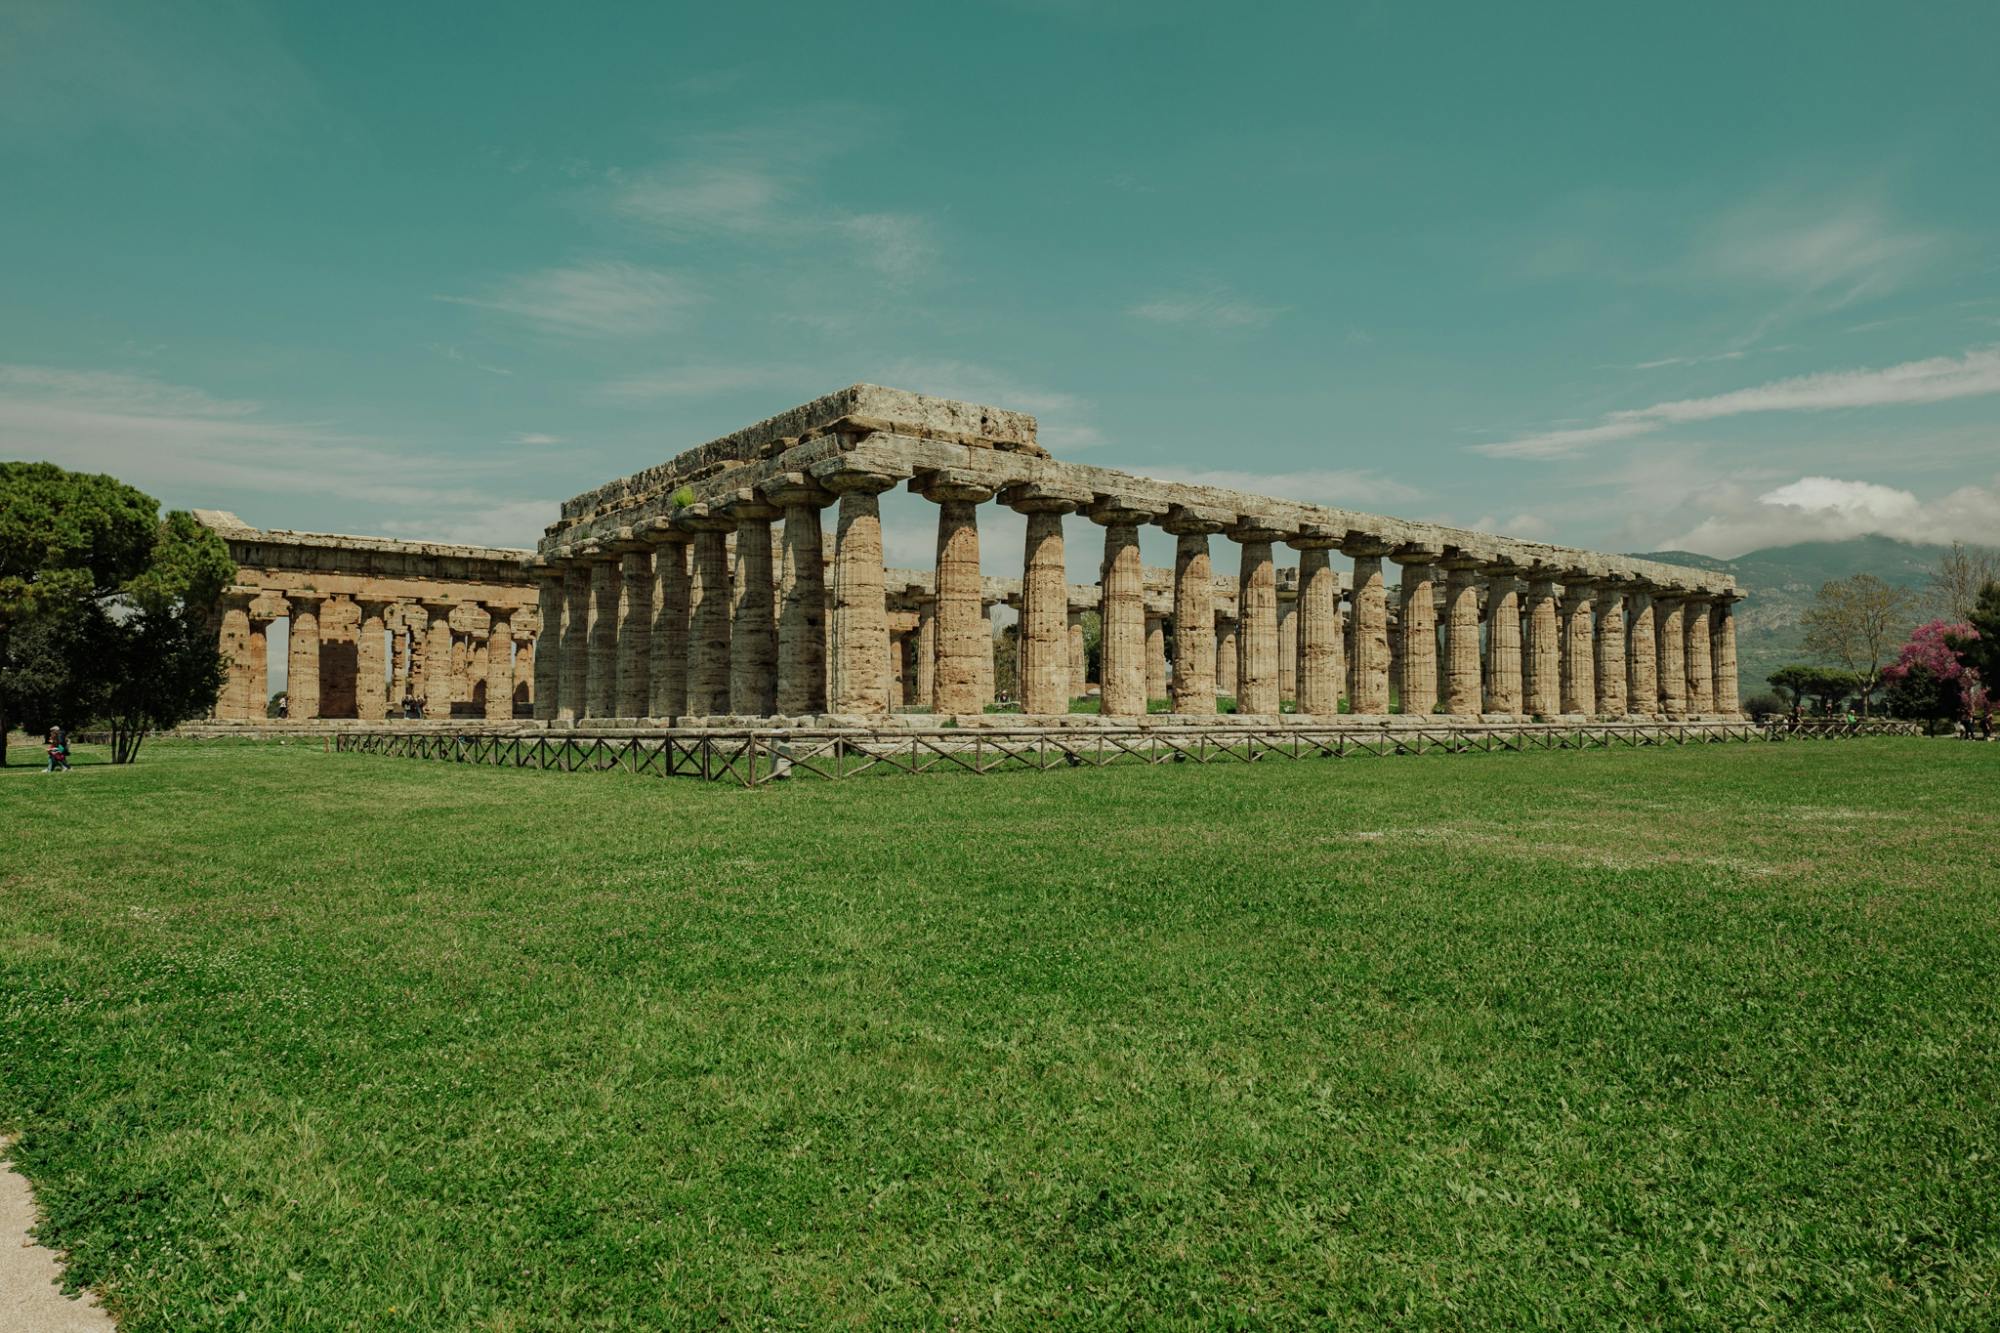 Excursão para grupos pequenos sem filas em Paestum com um arqueólogo